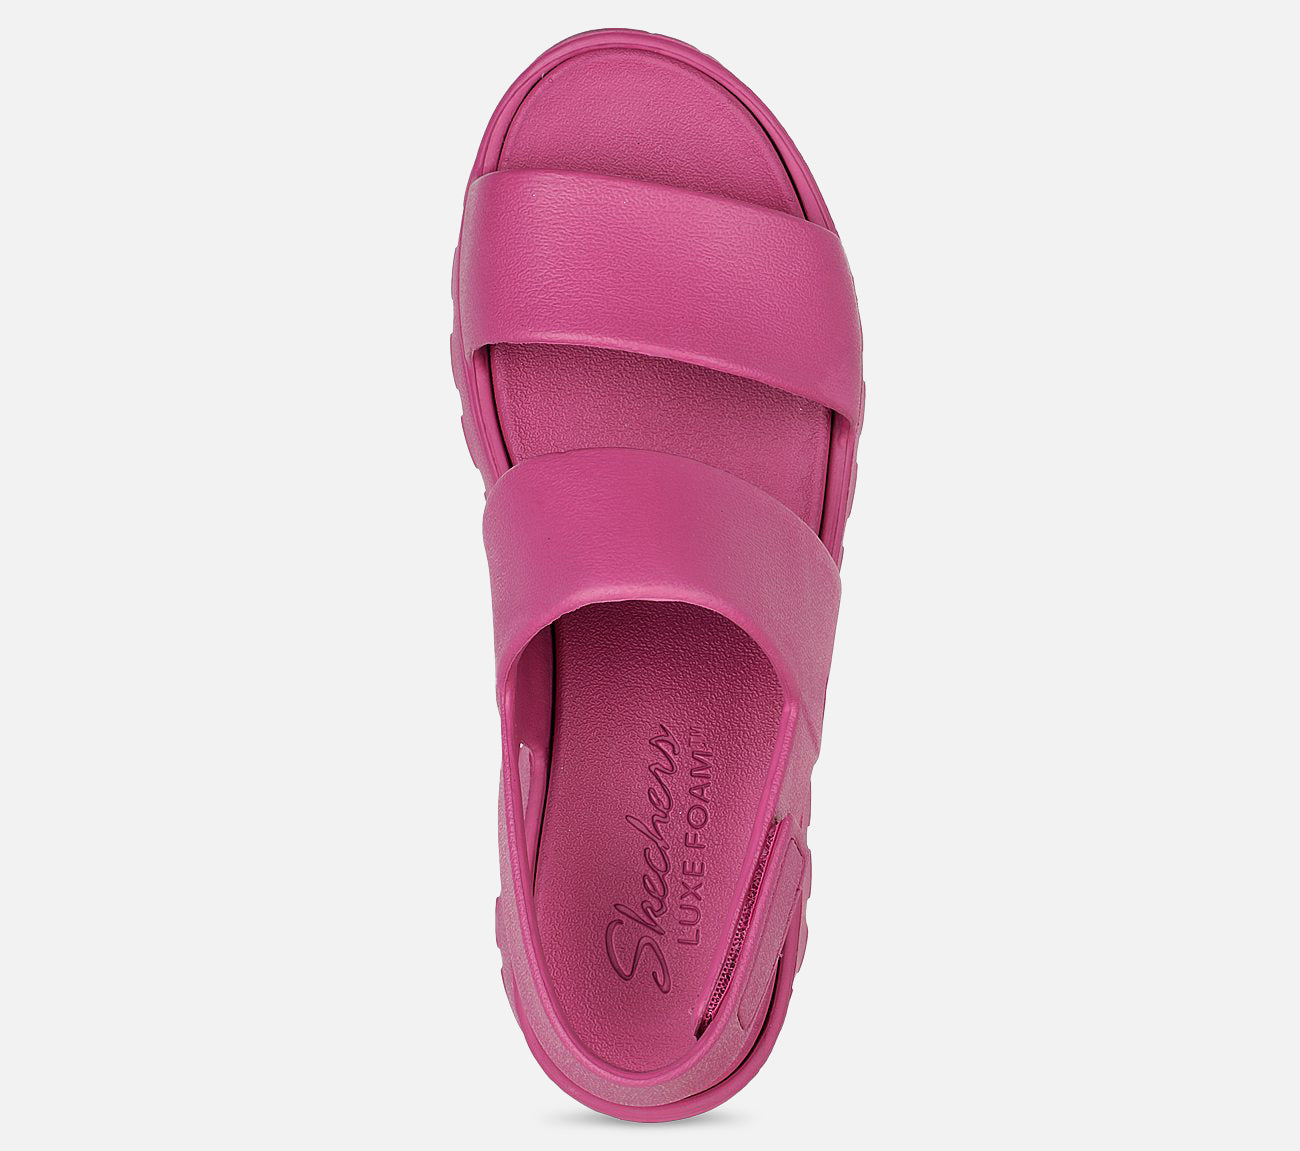 Foamies: Footsteps - Breezy Feels Sandal Skechers